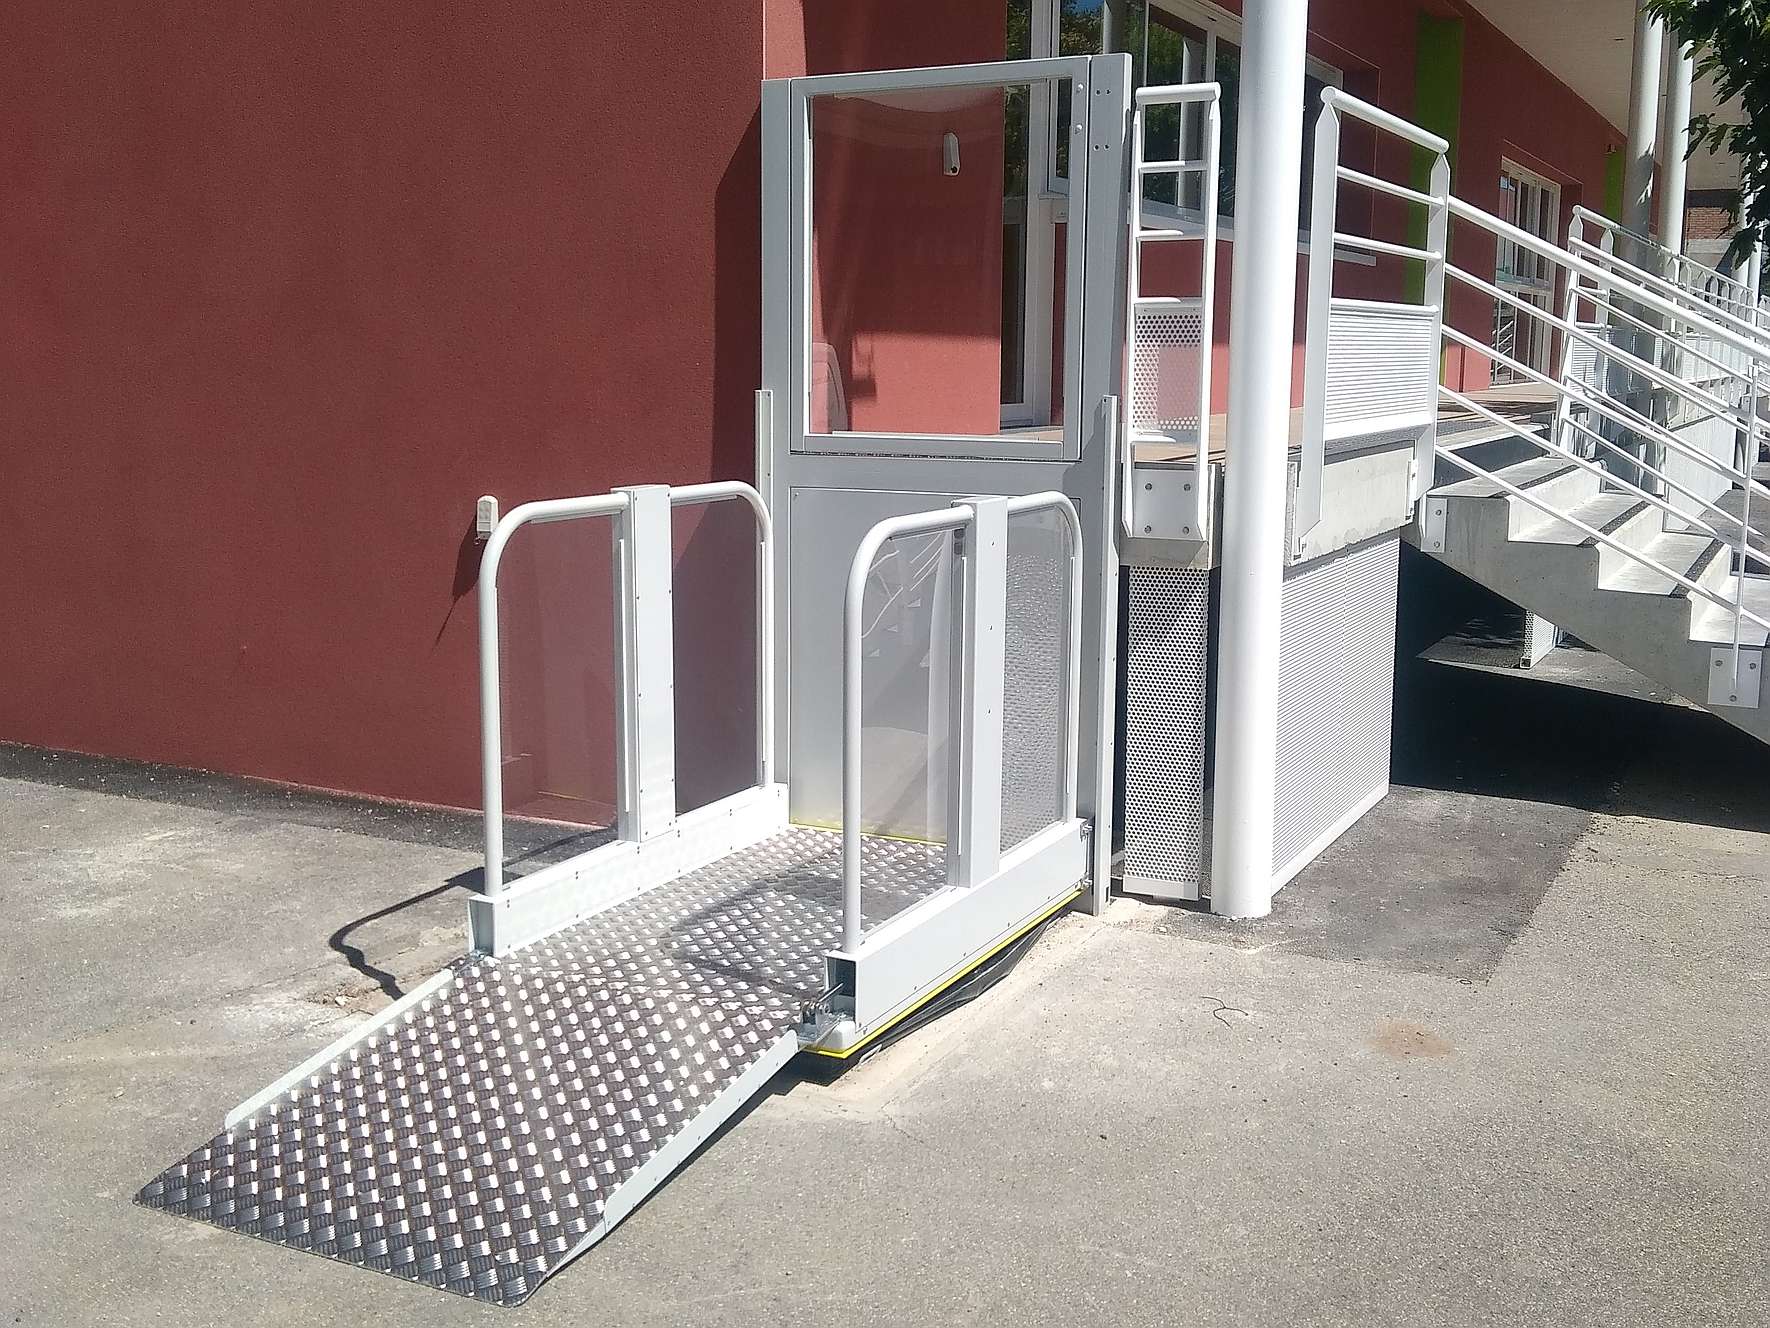 Plate-forme élévatrice verticale pour les personnes en fauteuil roulant